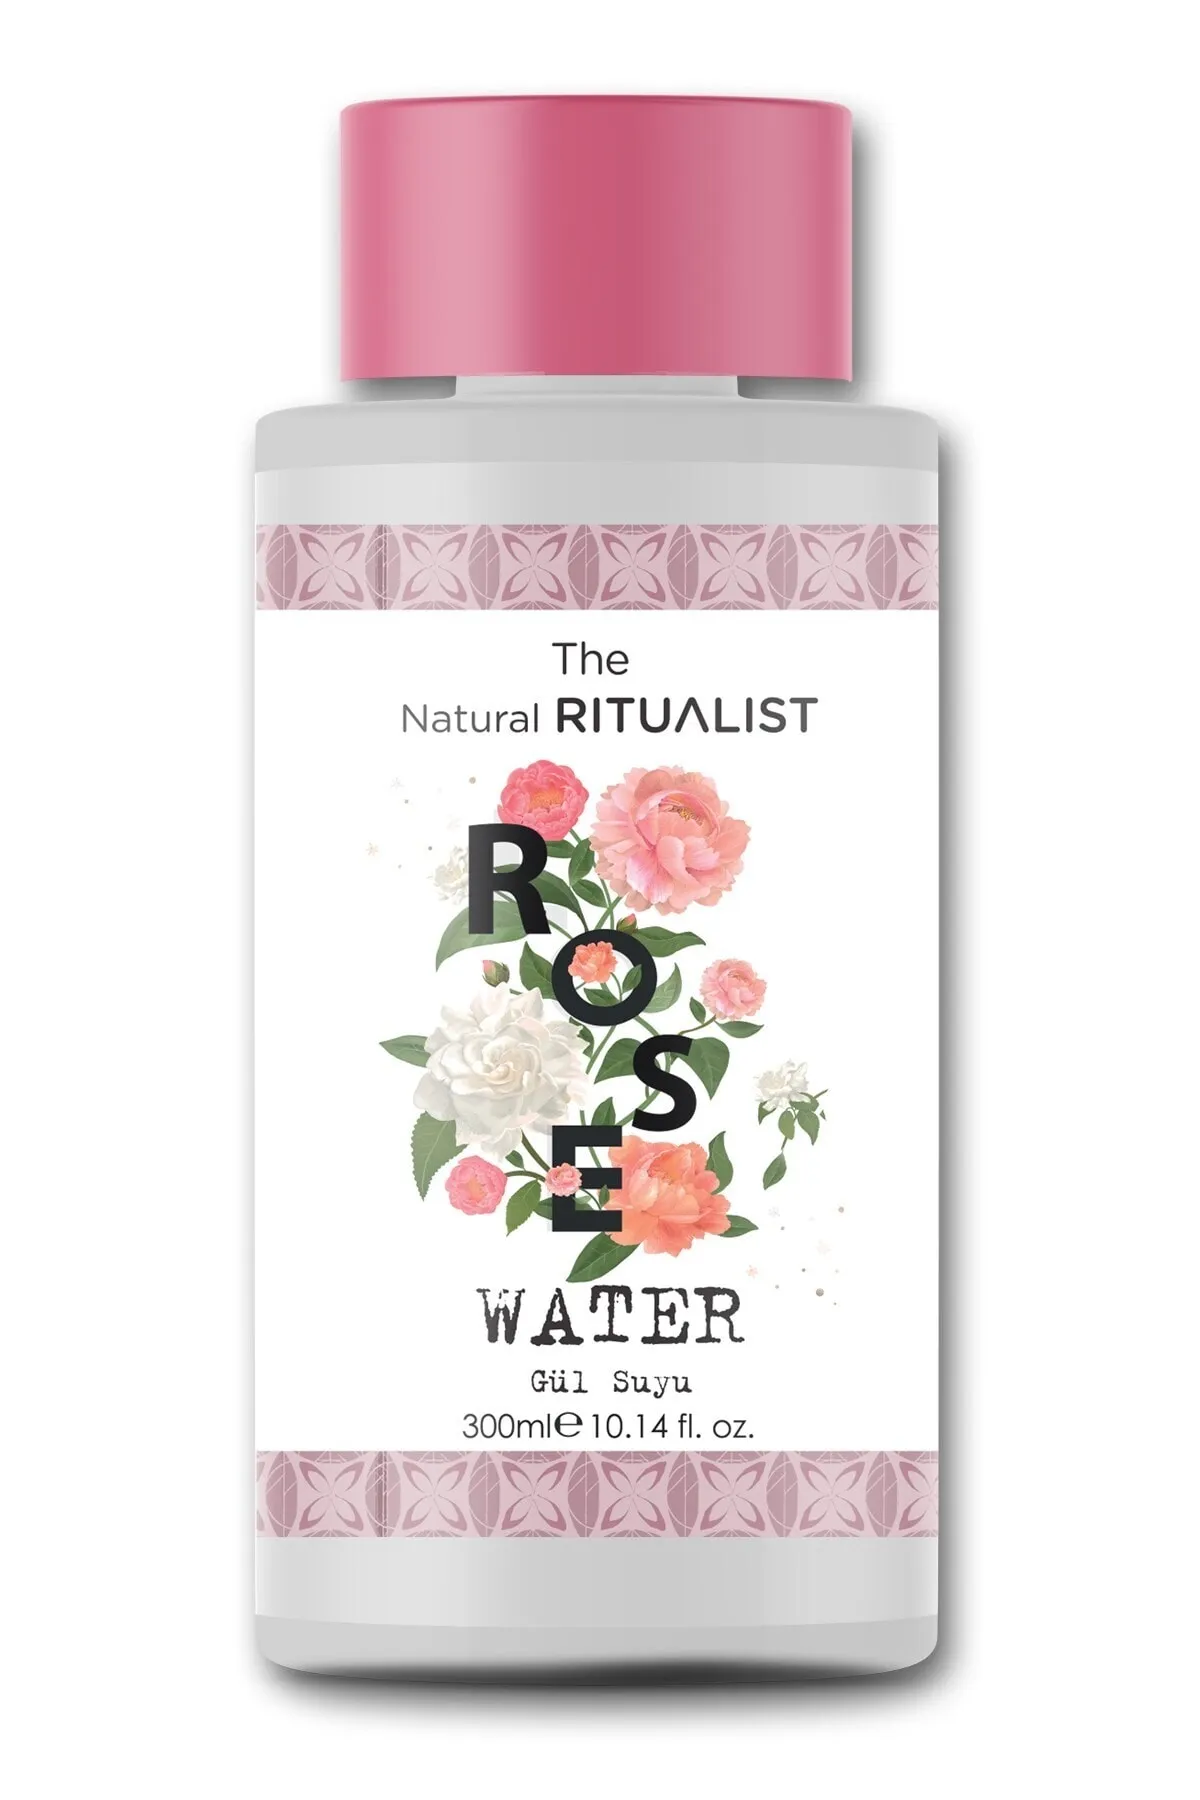 The Natural Ritualist - The Natural Ritualist Gül Suyu 300 ml